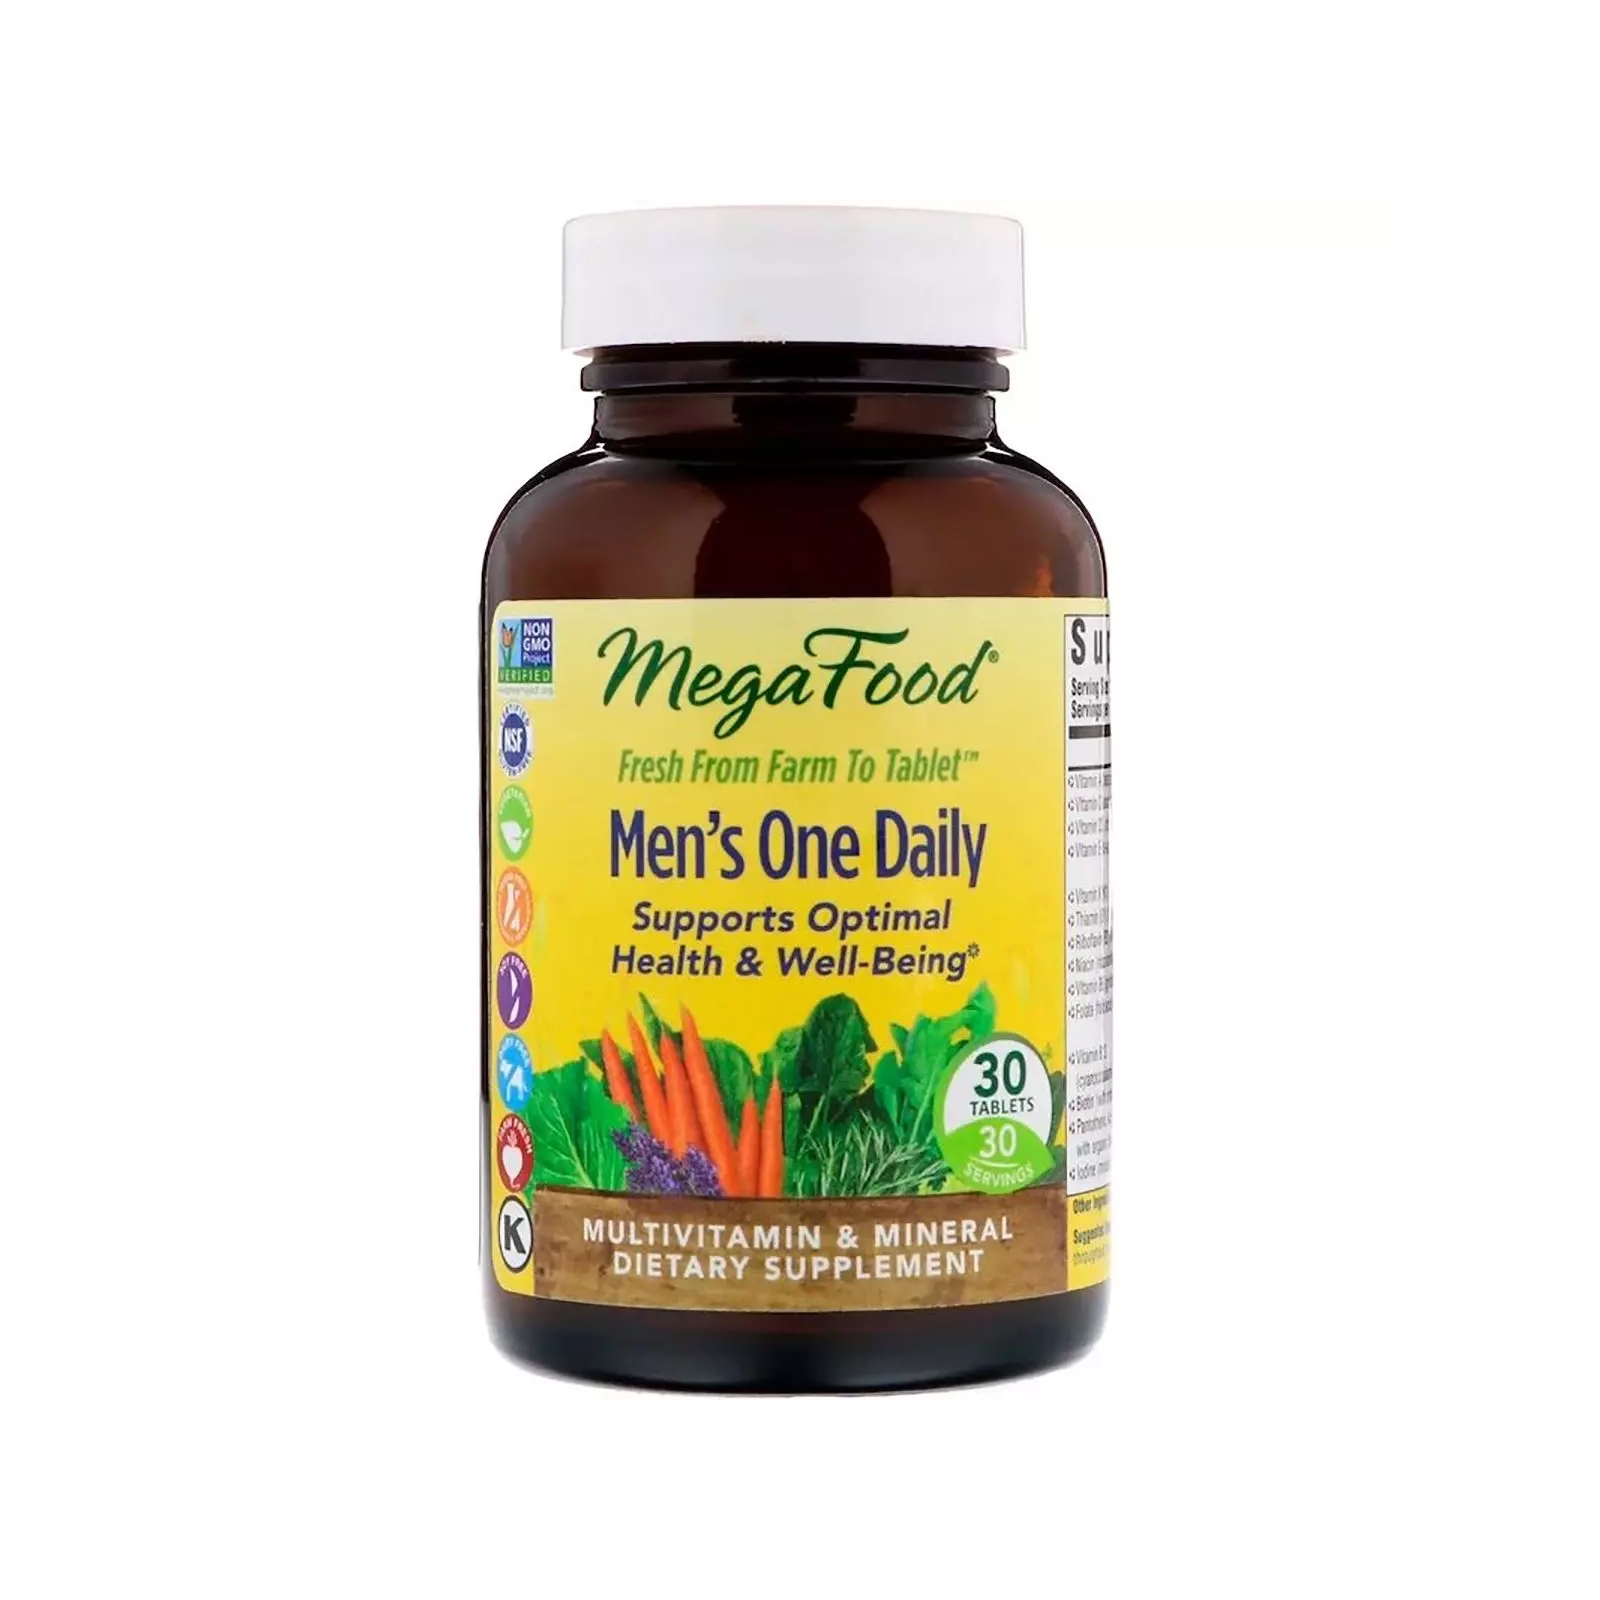 Мультивитамин MegaFood Мультивитамины для мужчин, Men’s One Daily, 30 таблеток (MGF-10106)